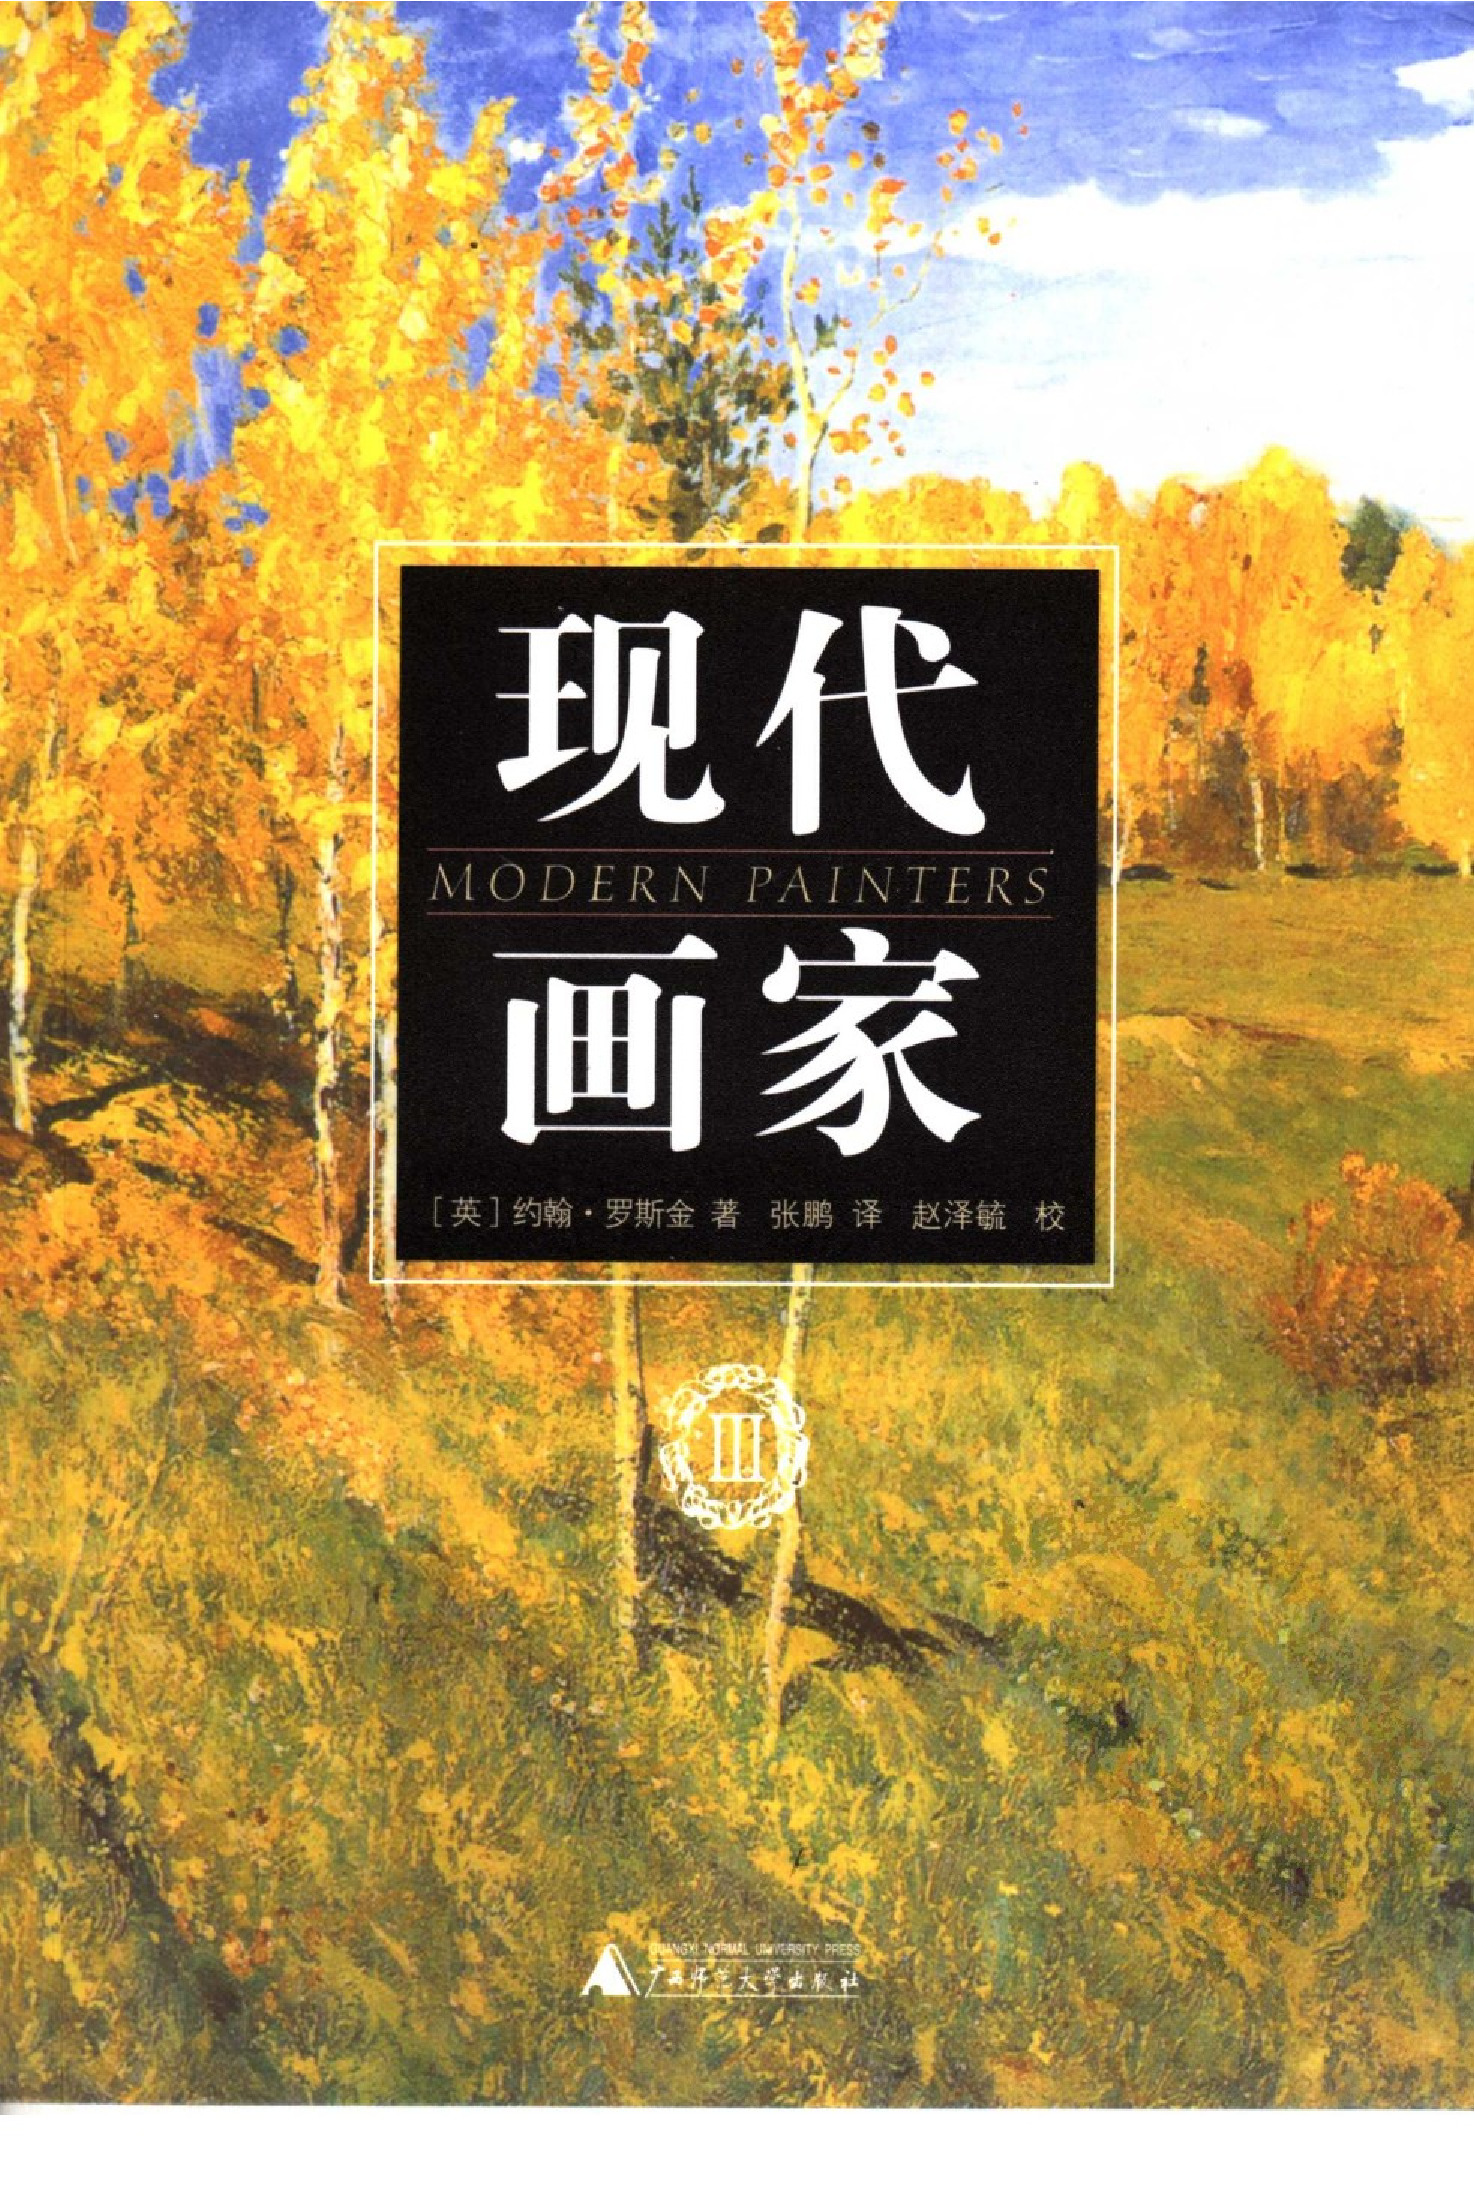 现代画家Ⅲ[英]约翰·罗斯金.张鹏译.广西师范大学出版社(2005)